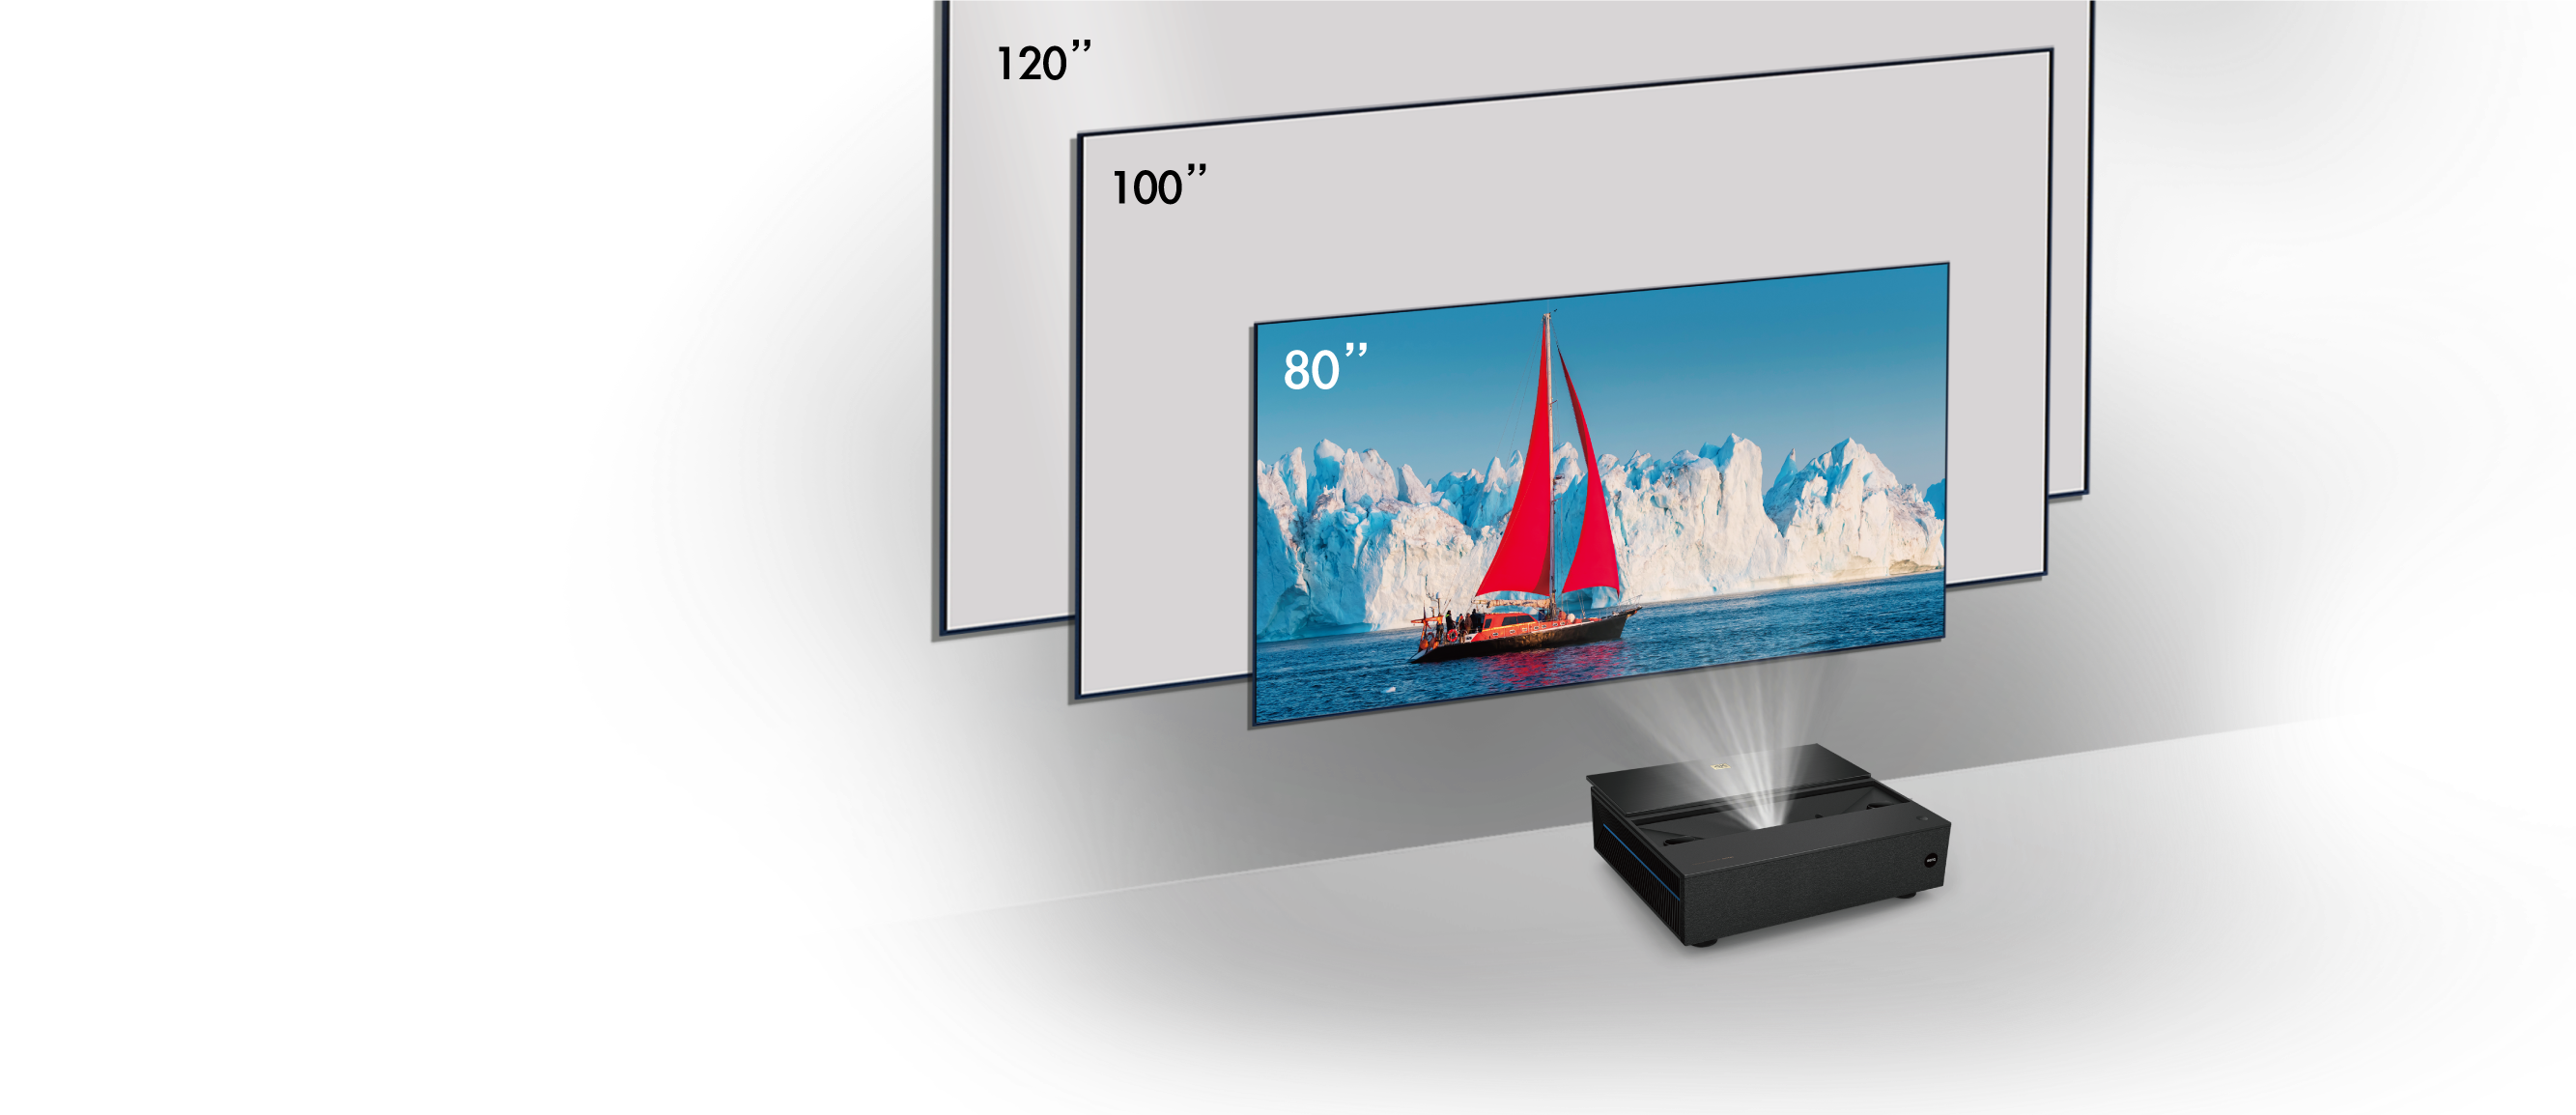 BenQ Projektor V7050i  Hogyan maximalizálják a fényerősítő vásznak a lézer TV élvezetét A megfelelő vászon kiválasztása az első lépés ahhoz, hogy a legtöbbet hozza ki a lézer TV projektorból.